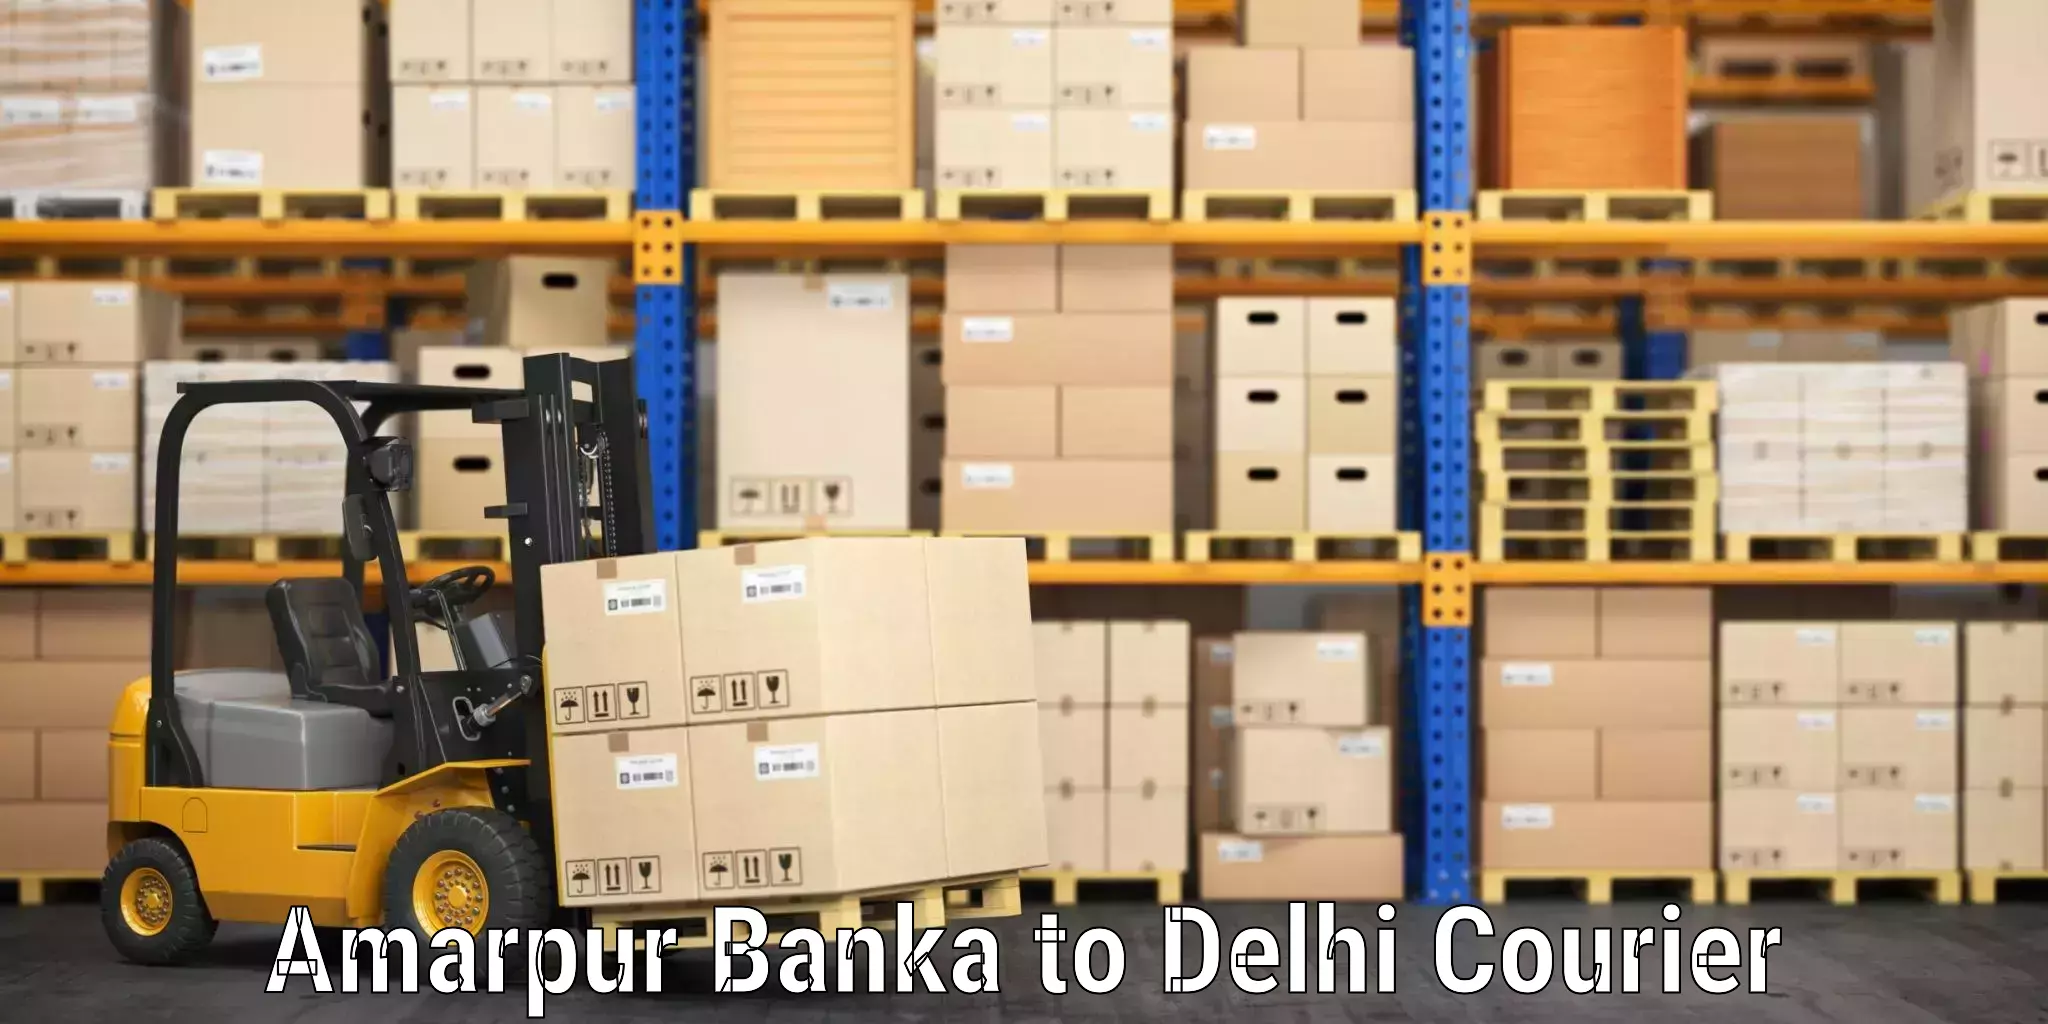 Baggage shipping experience Amarpur Banka to Subhash Nagar